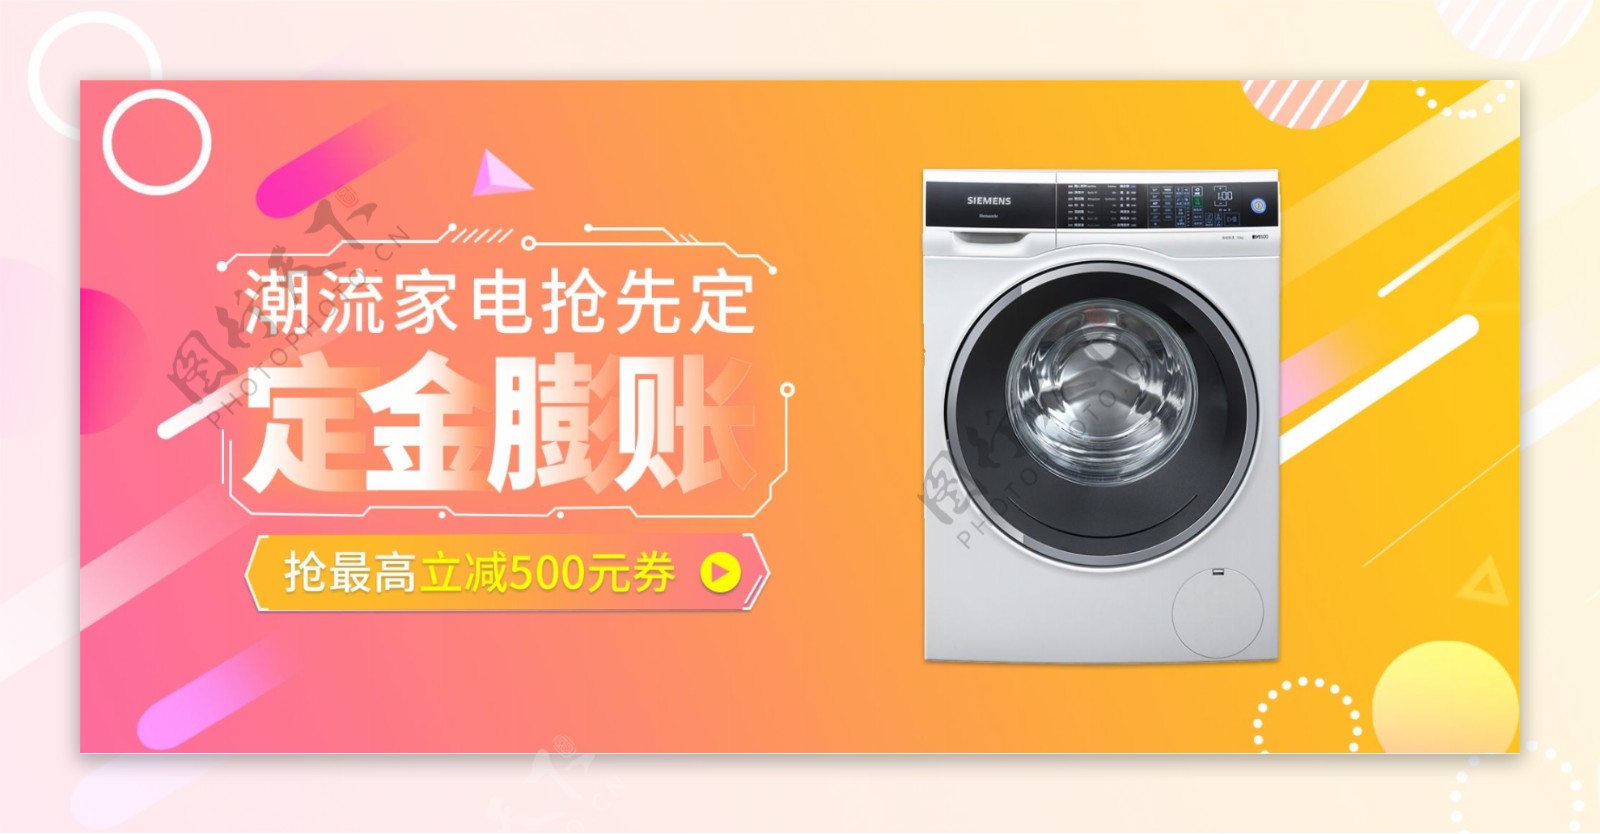 定金膨胀洗衣机电器促销活动banner